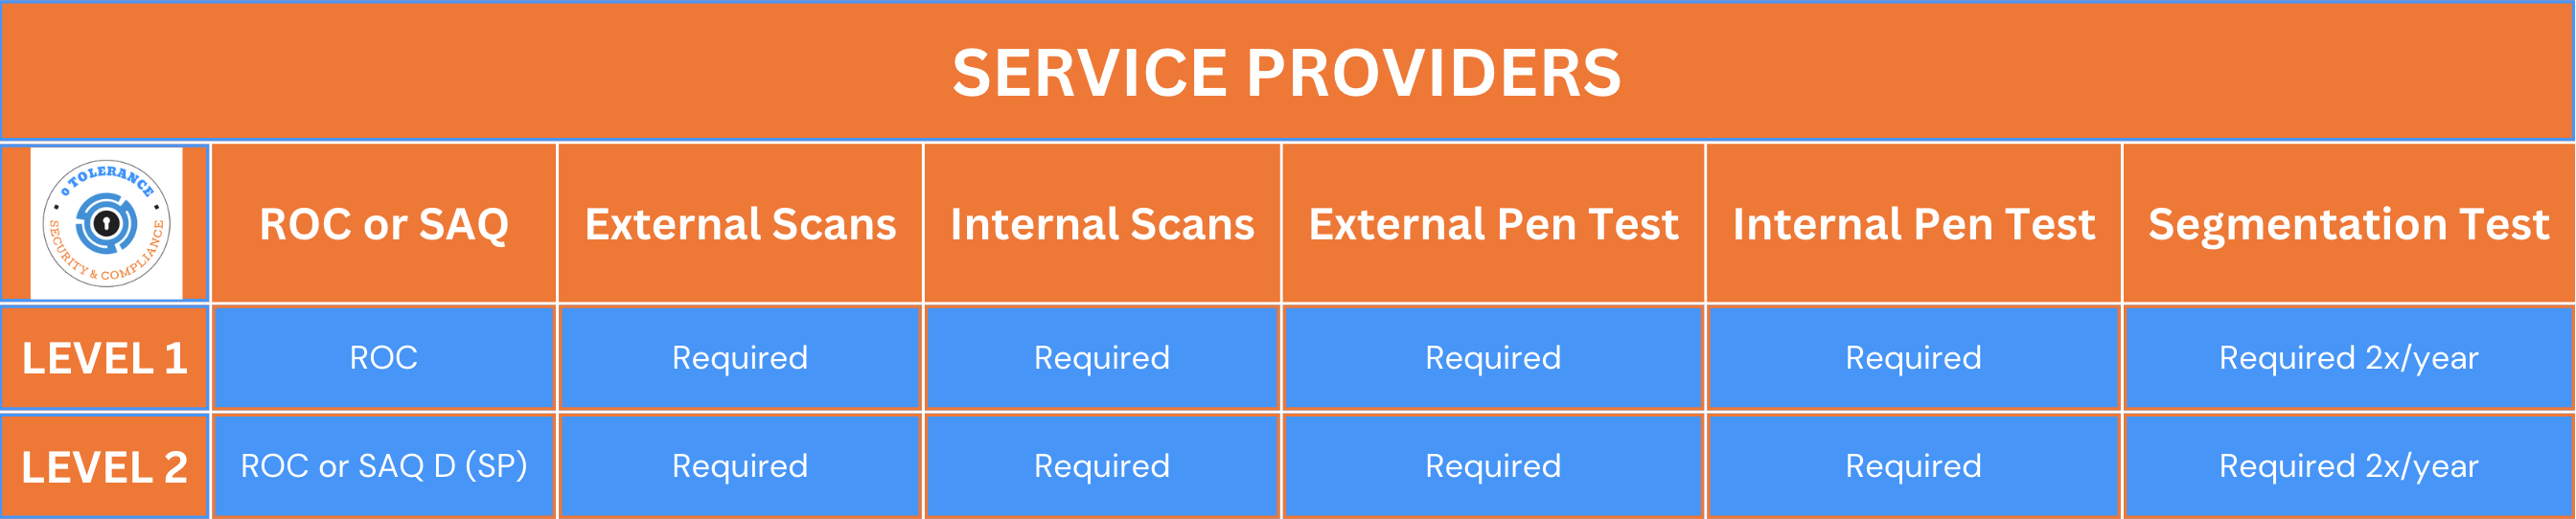 PCI Service Provider Requirements